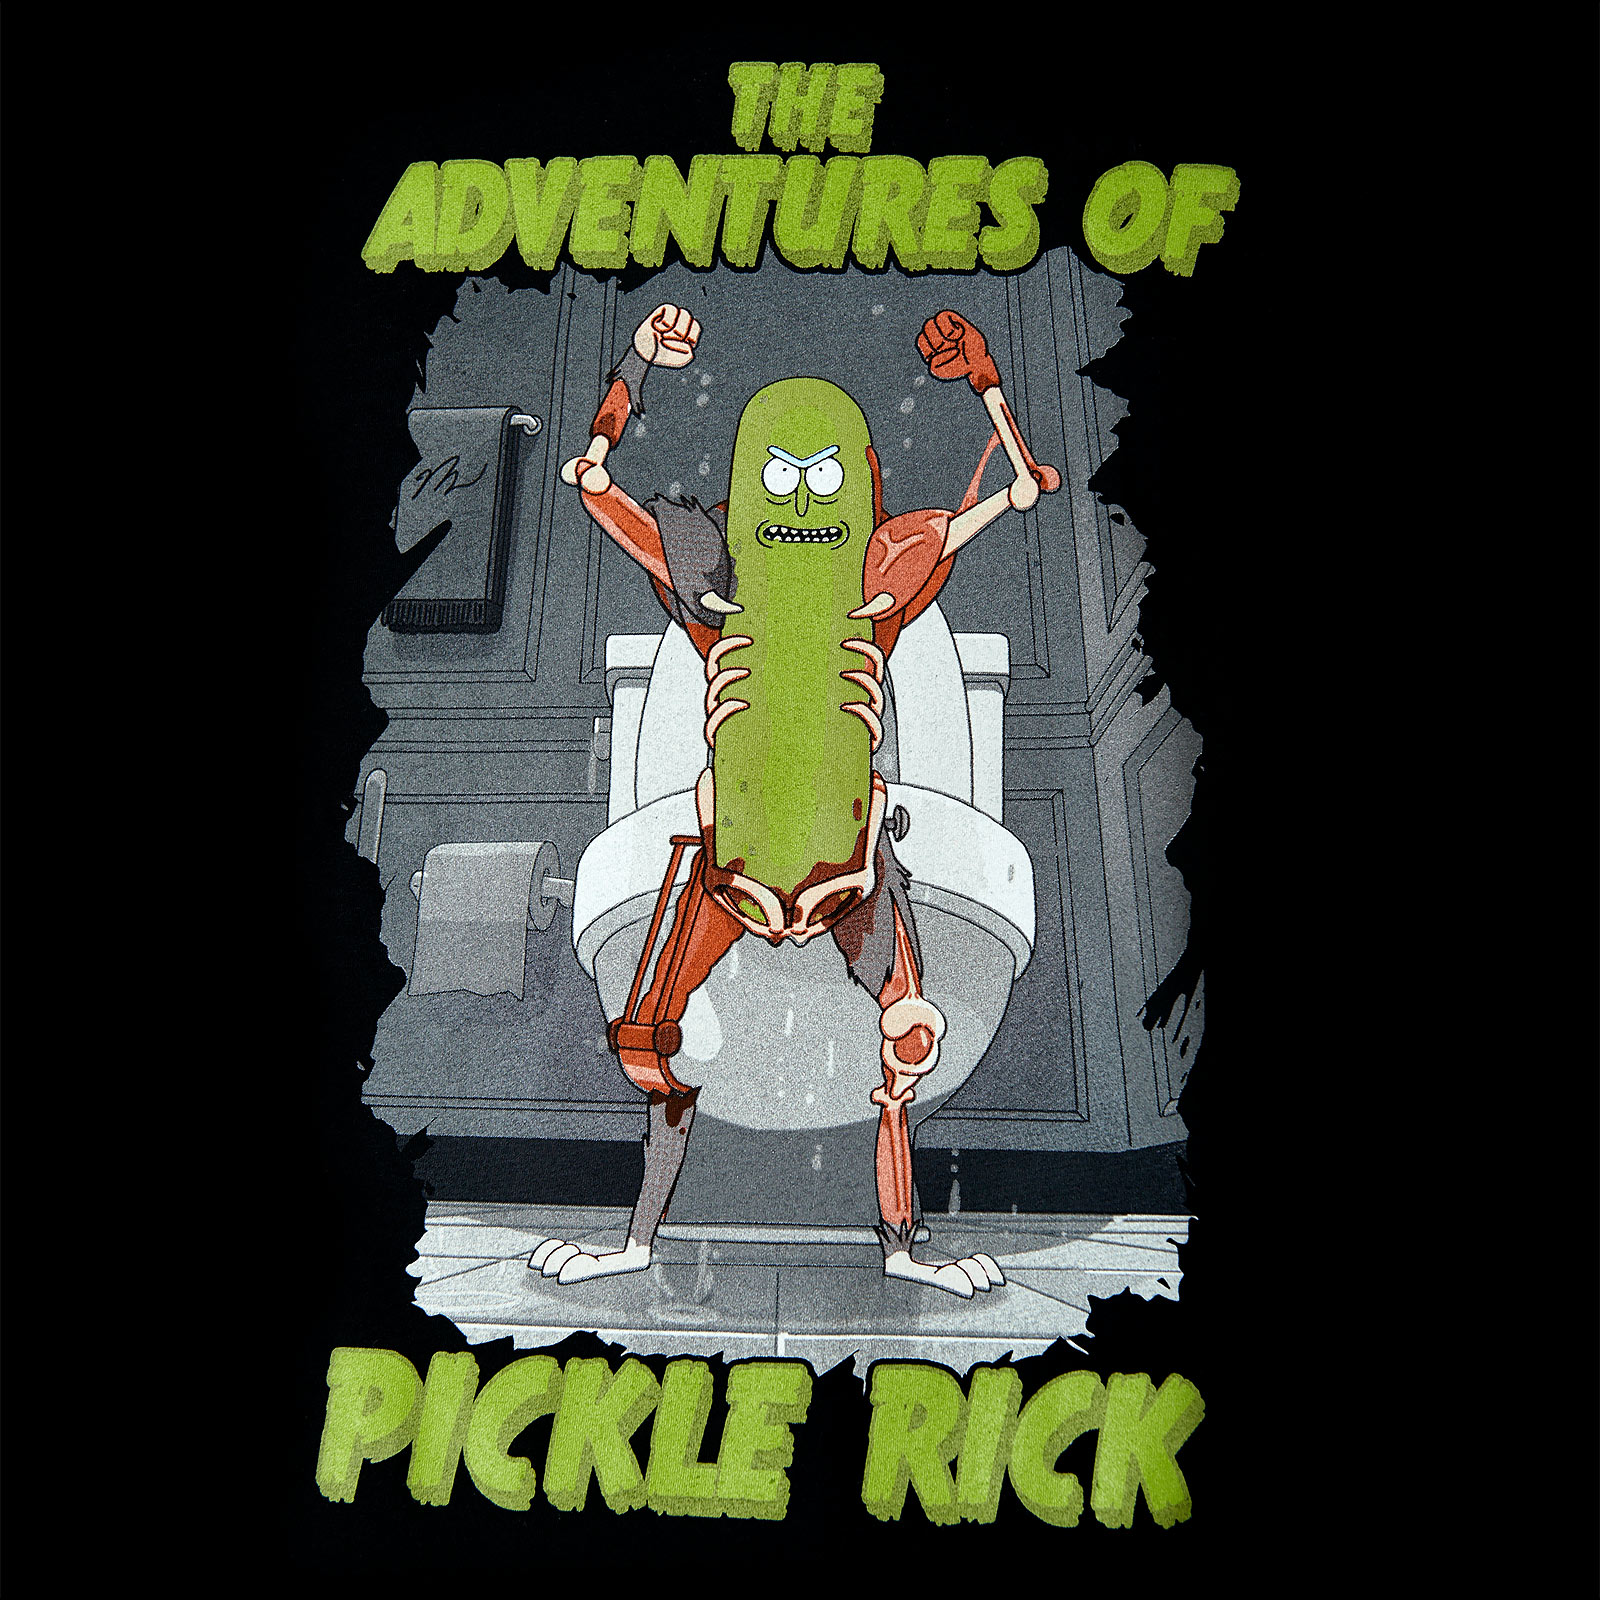 Rick et Morty - Aventures de Pickle Rick T-Shirt noir